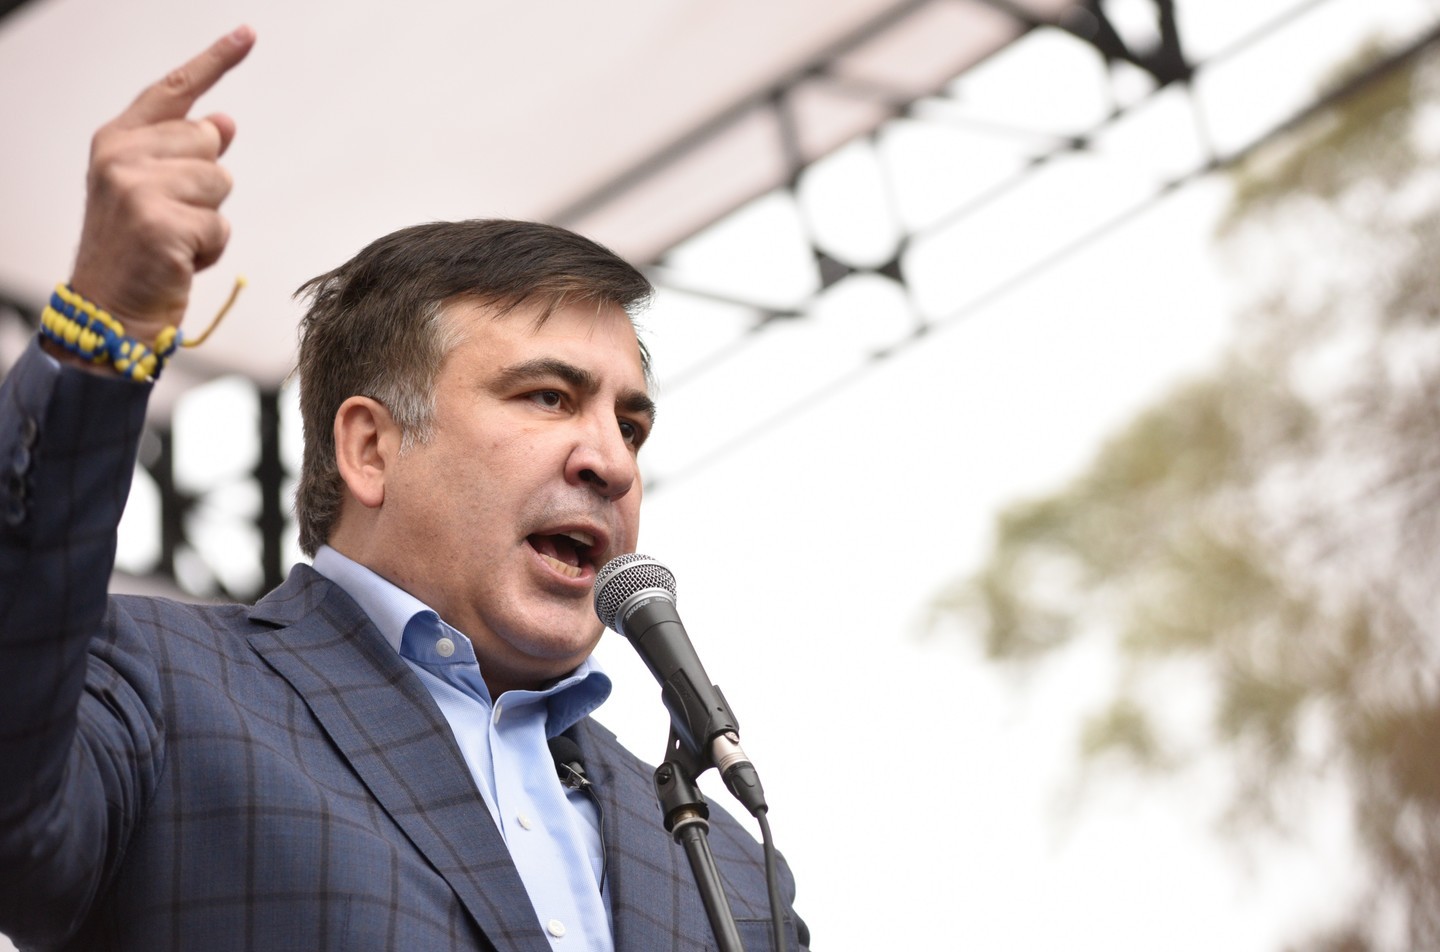 <p><span>Михаил Саакашвили. Фото: &copy;РИА Новости&nbsp;</span></p>
<div>
<div></div>
</div>